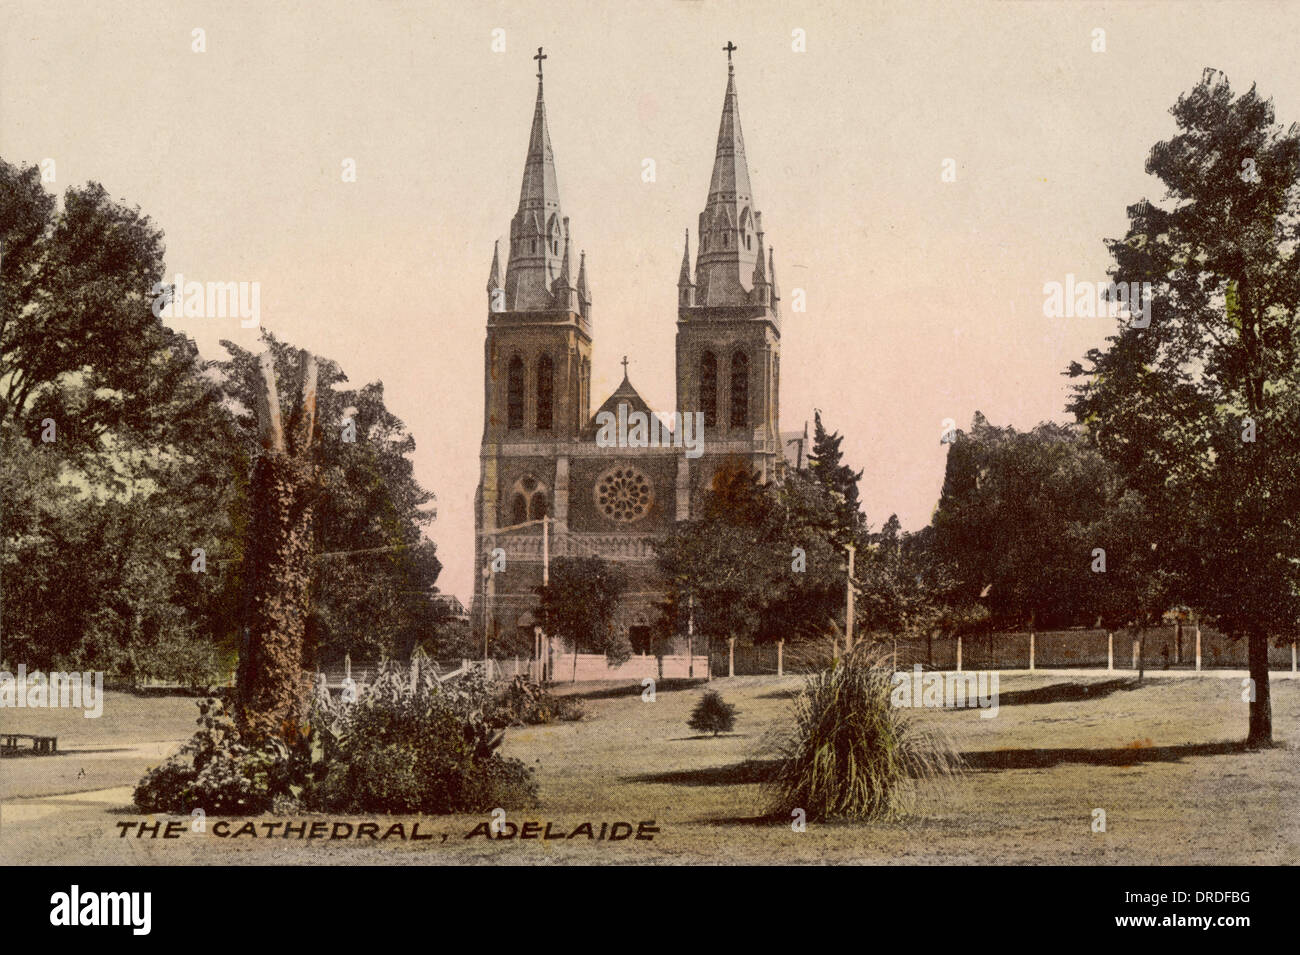 Adelaide, 1900s Stock Photo